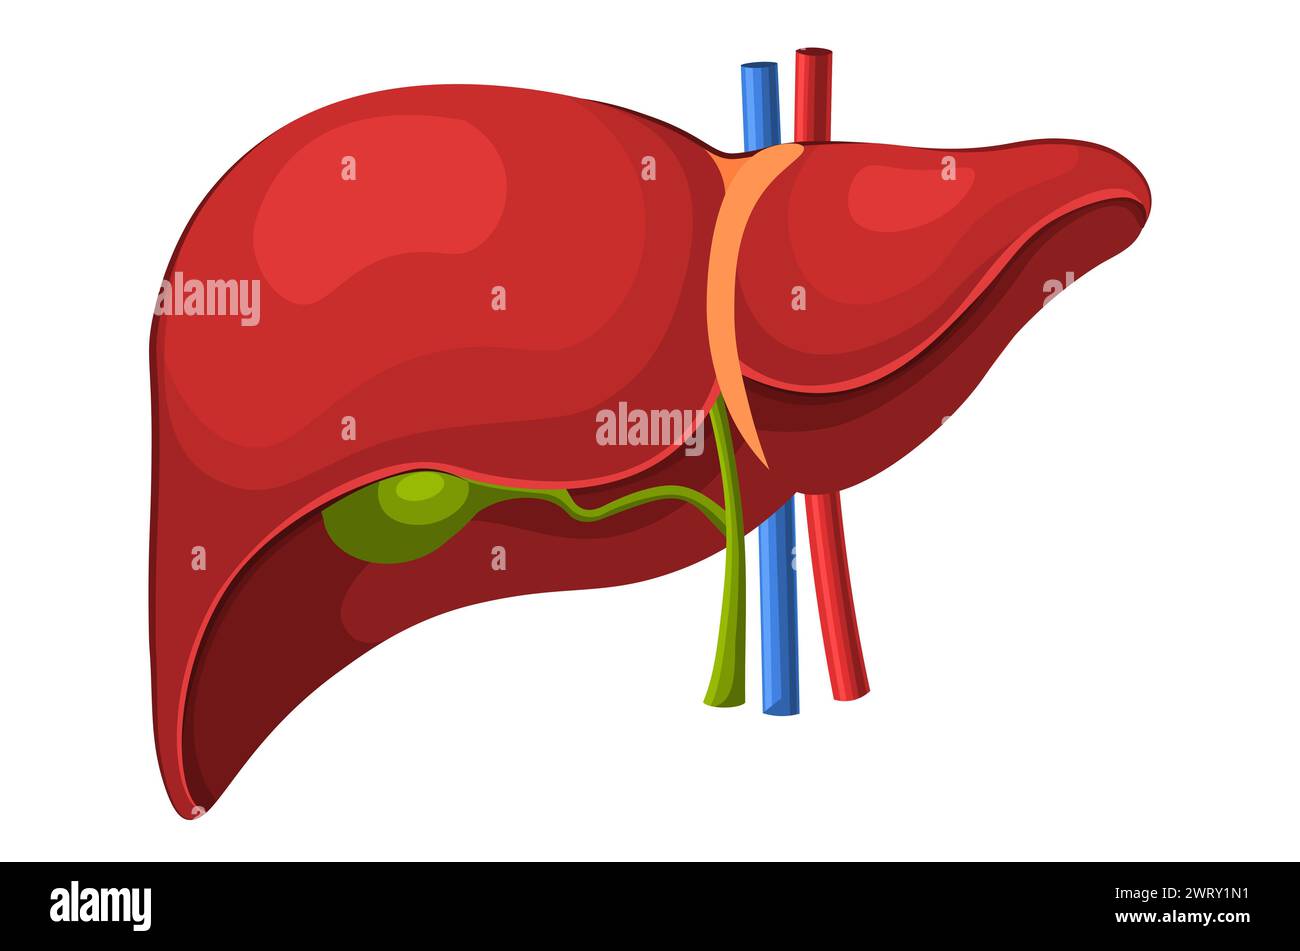 Anatomie hépatique humaine. Organe interne humain : vésicule biliaire, aorte, veine porte et canal hépatique. Médecine et concept de soins de santé. Illustration vectorielle plate Banque D'Images